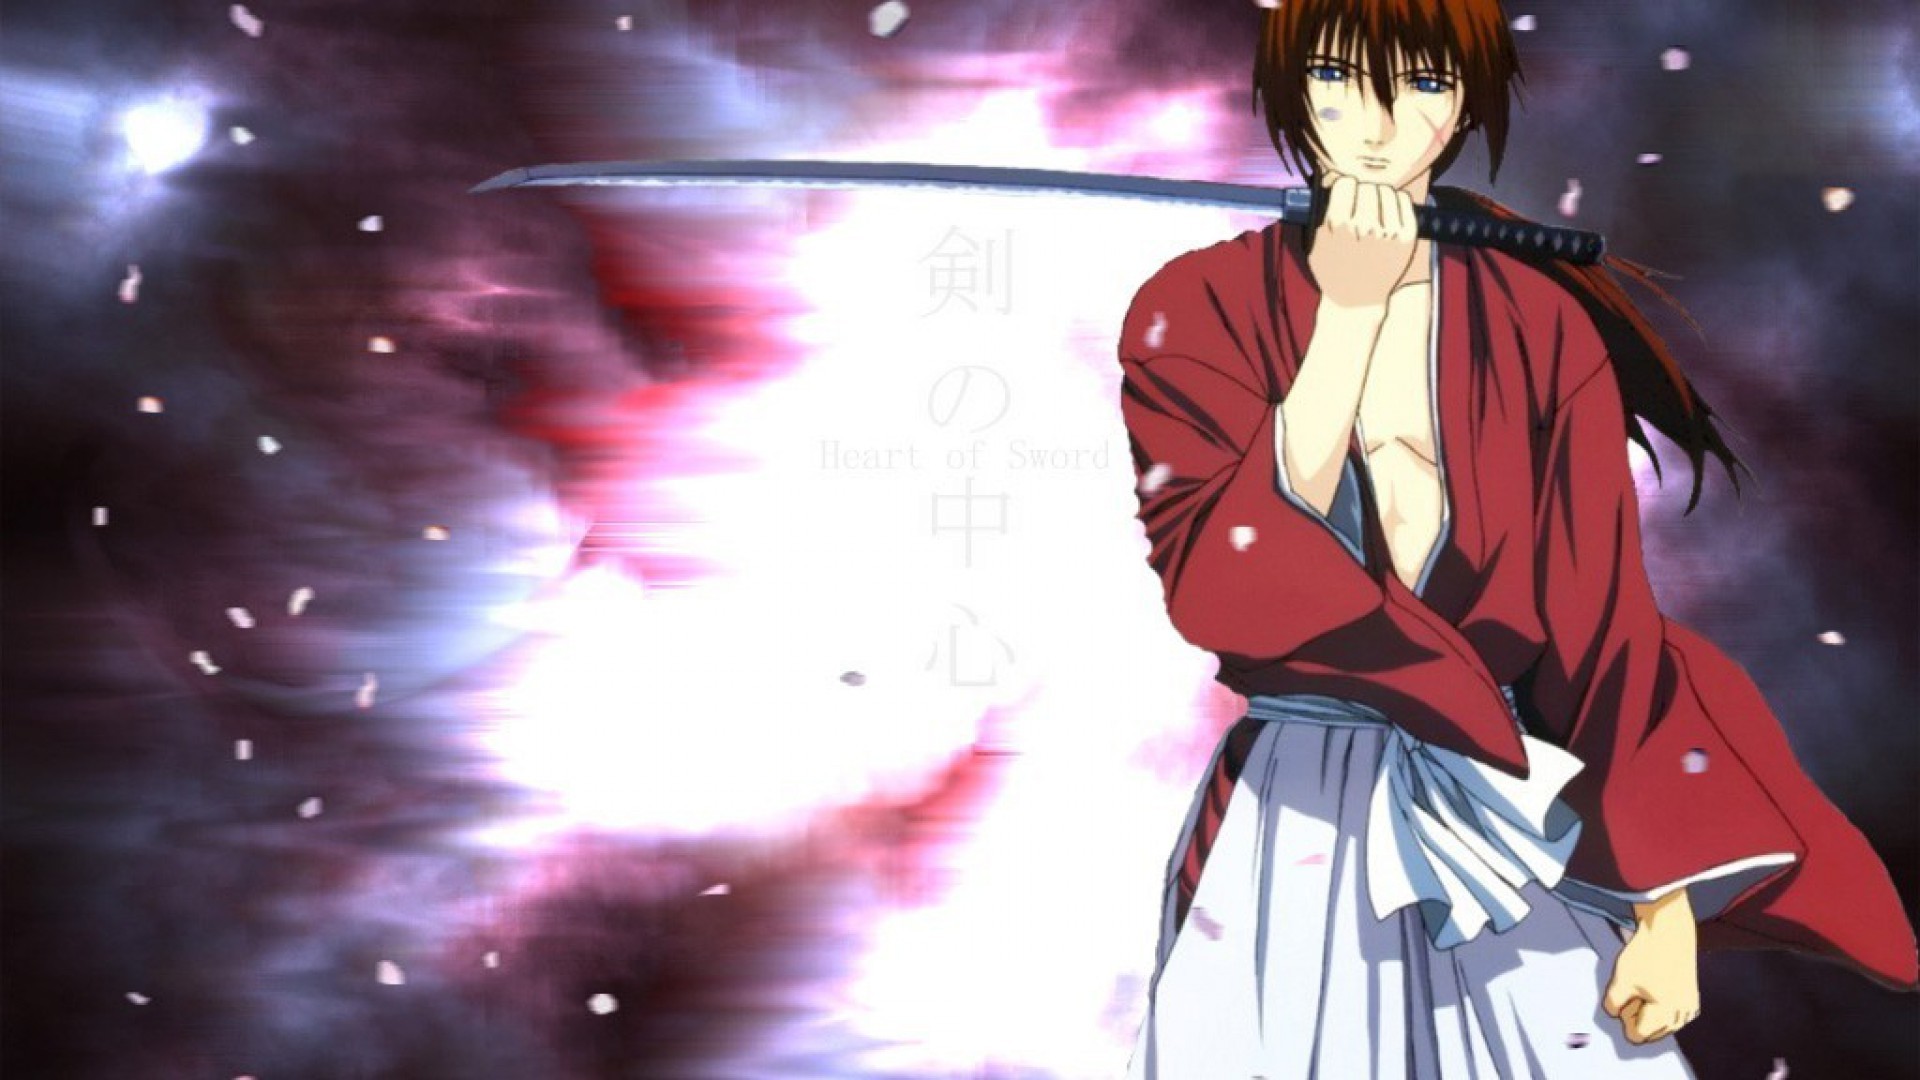 Download Kenshin Himura Anime Rurouni Kenshin HD Wallpaper